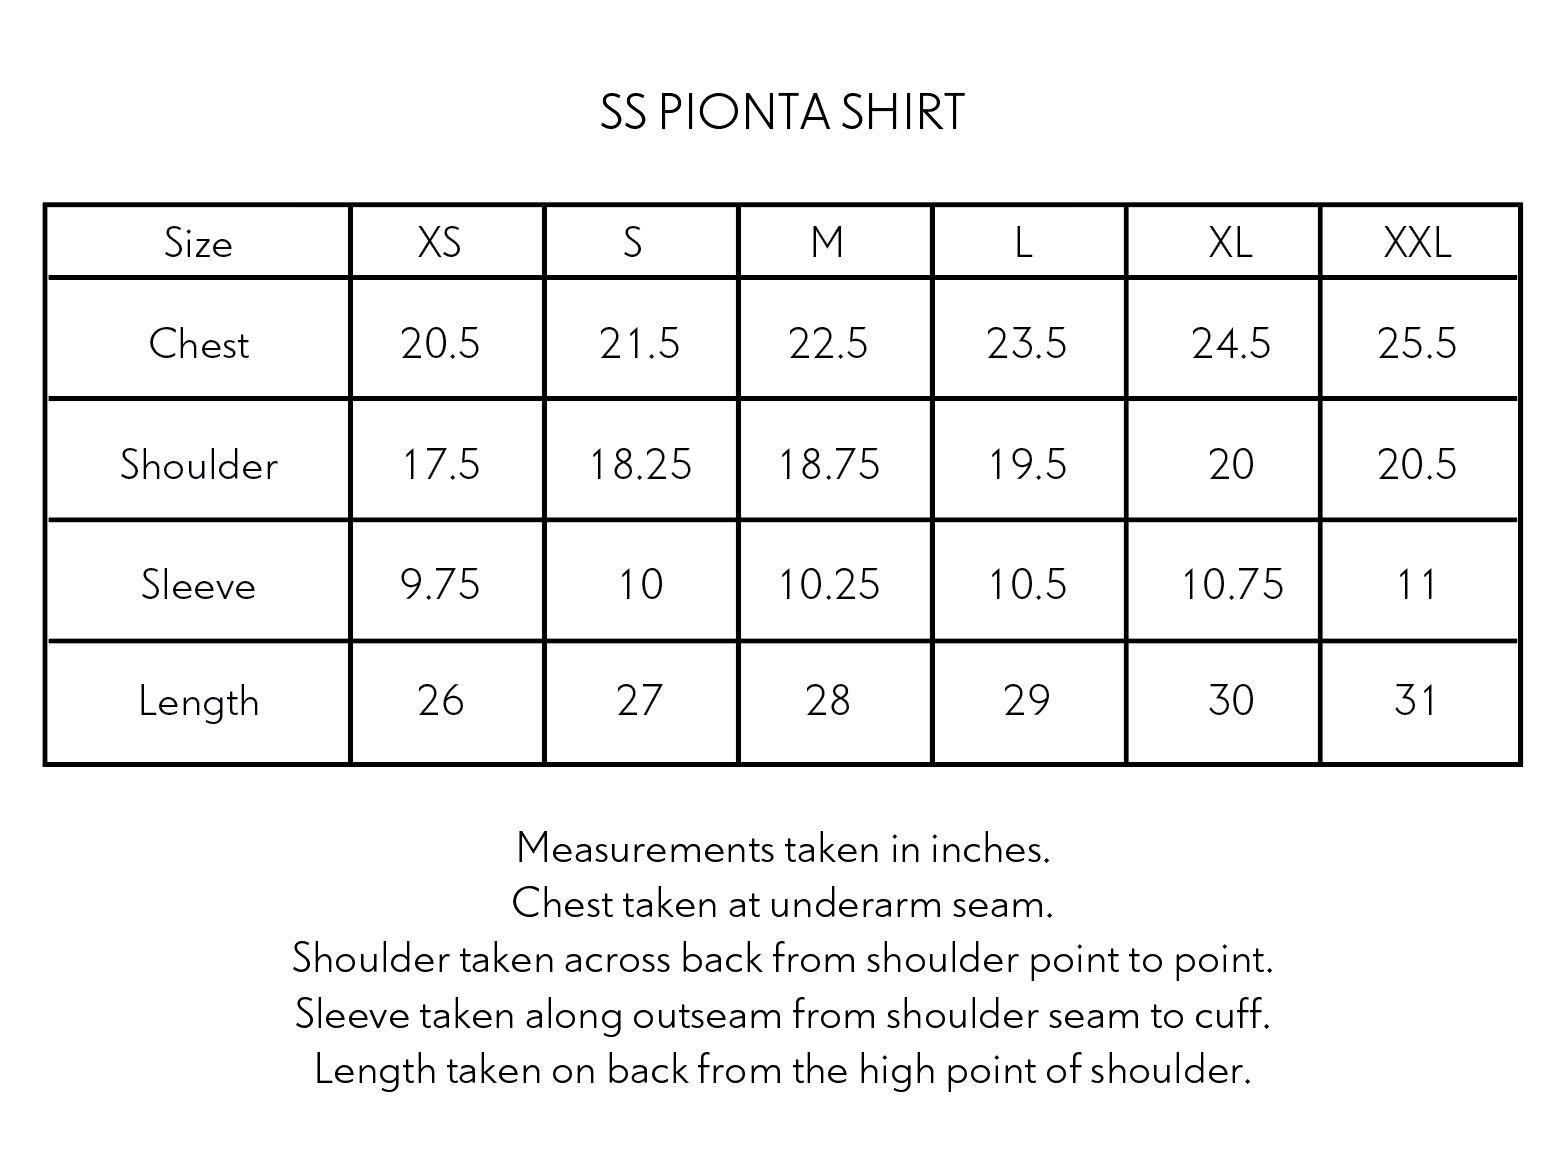 SS PIONTA SHIRT - MIDNIGHT/PURPLE PLAID SLUB COTTON